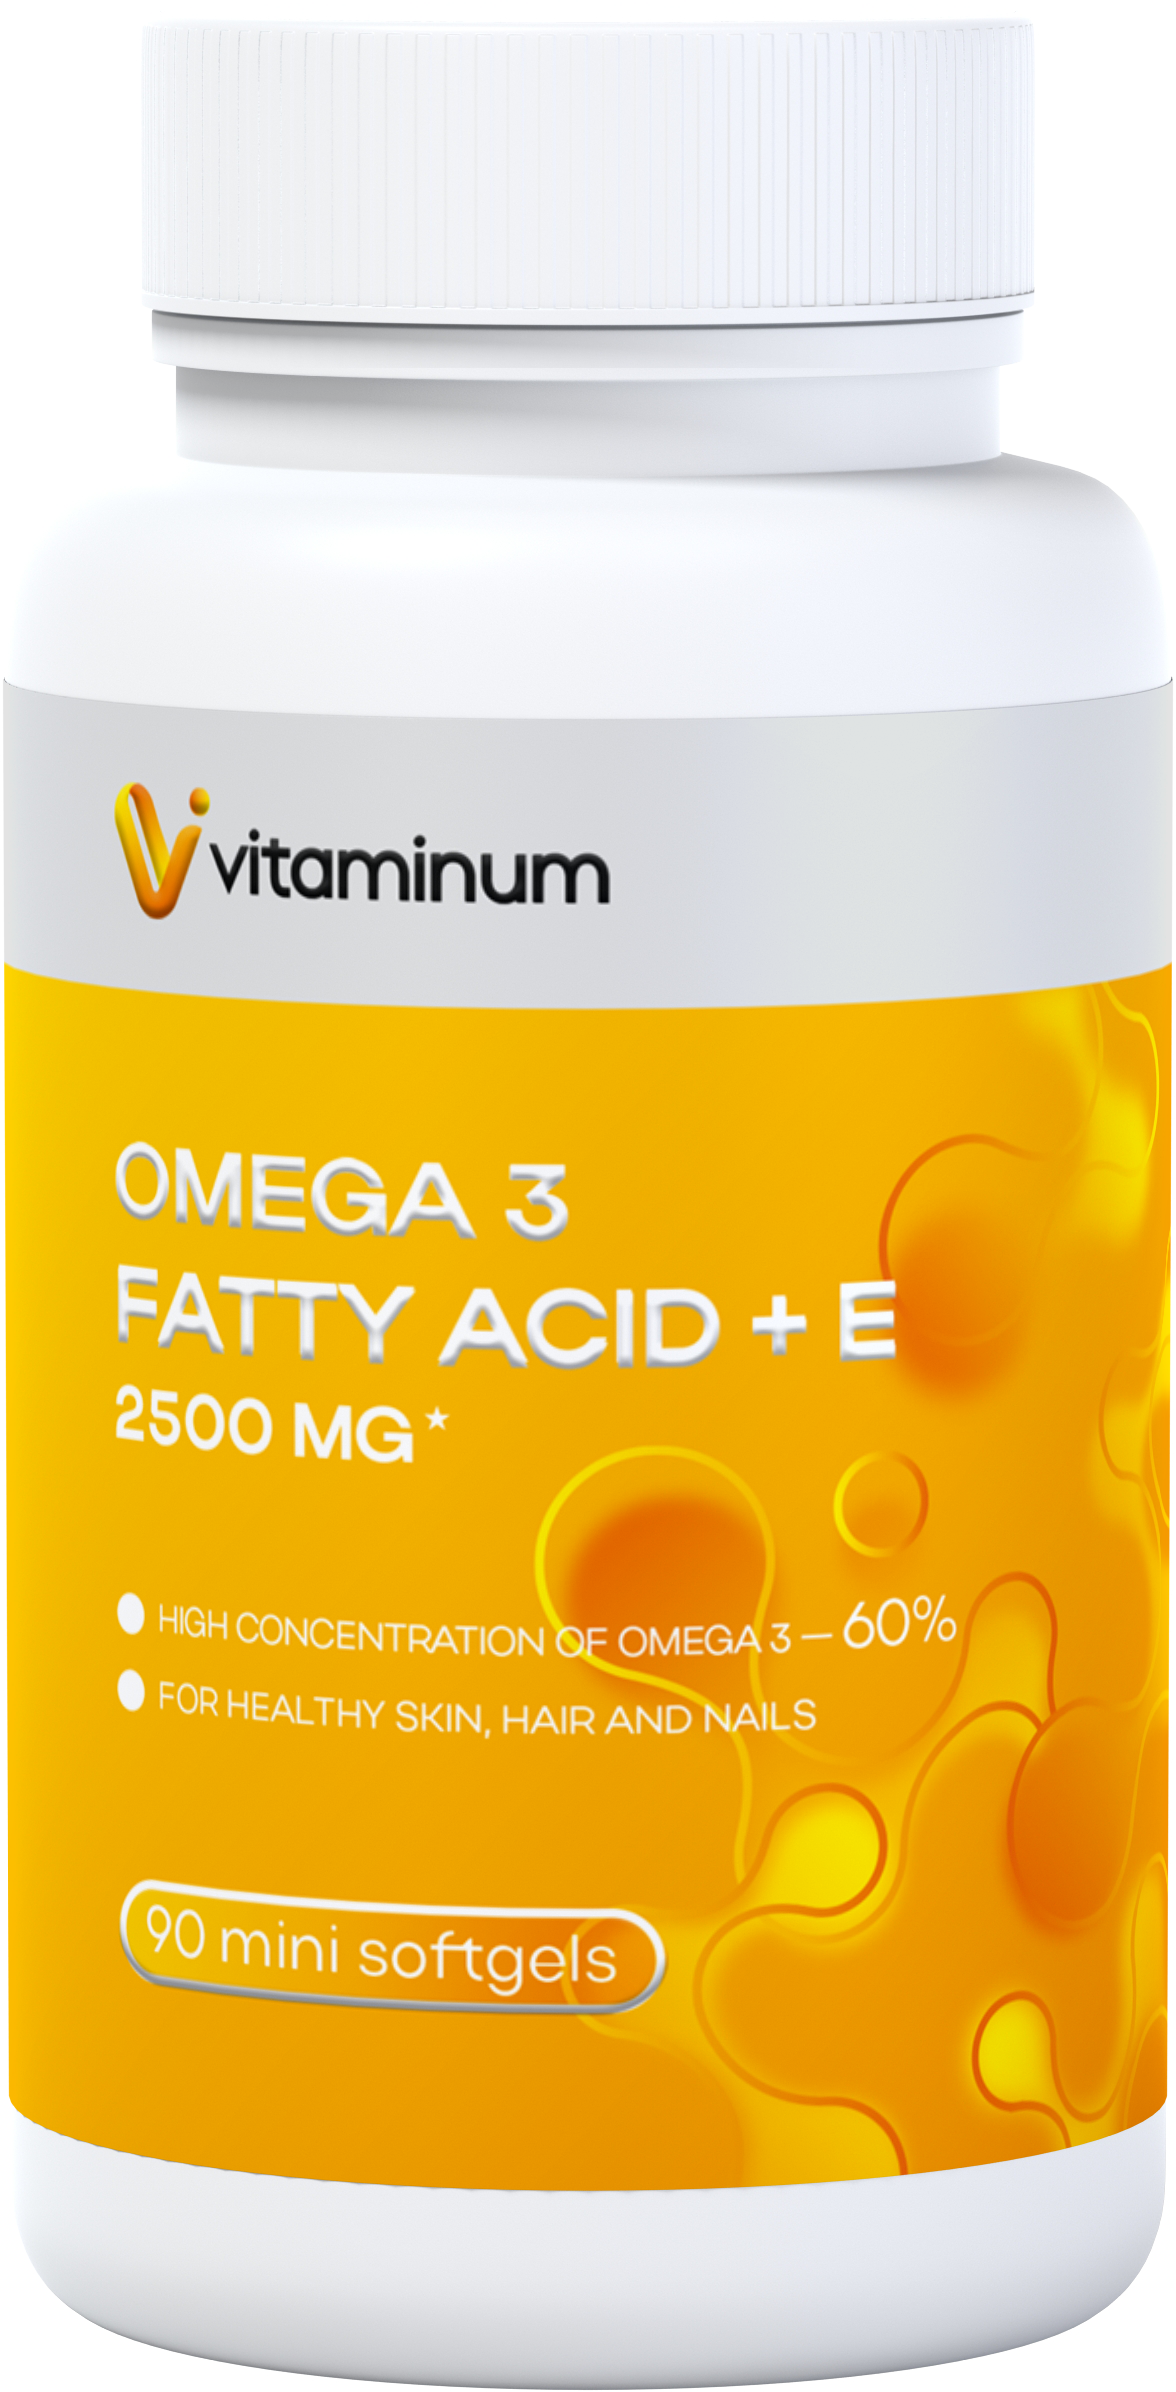  Vitaminum ОМЕГА 3 60% + витамин Е (2500 MG*) 90 капсул 700 мг   в Бийске